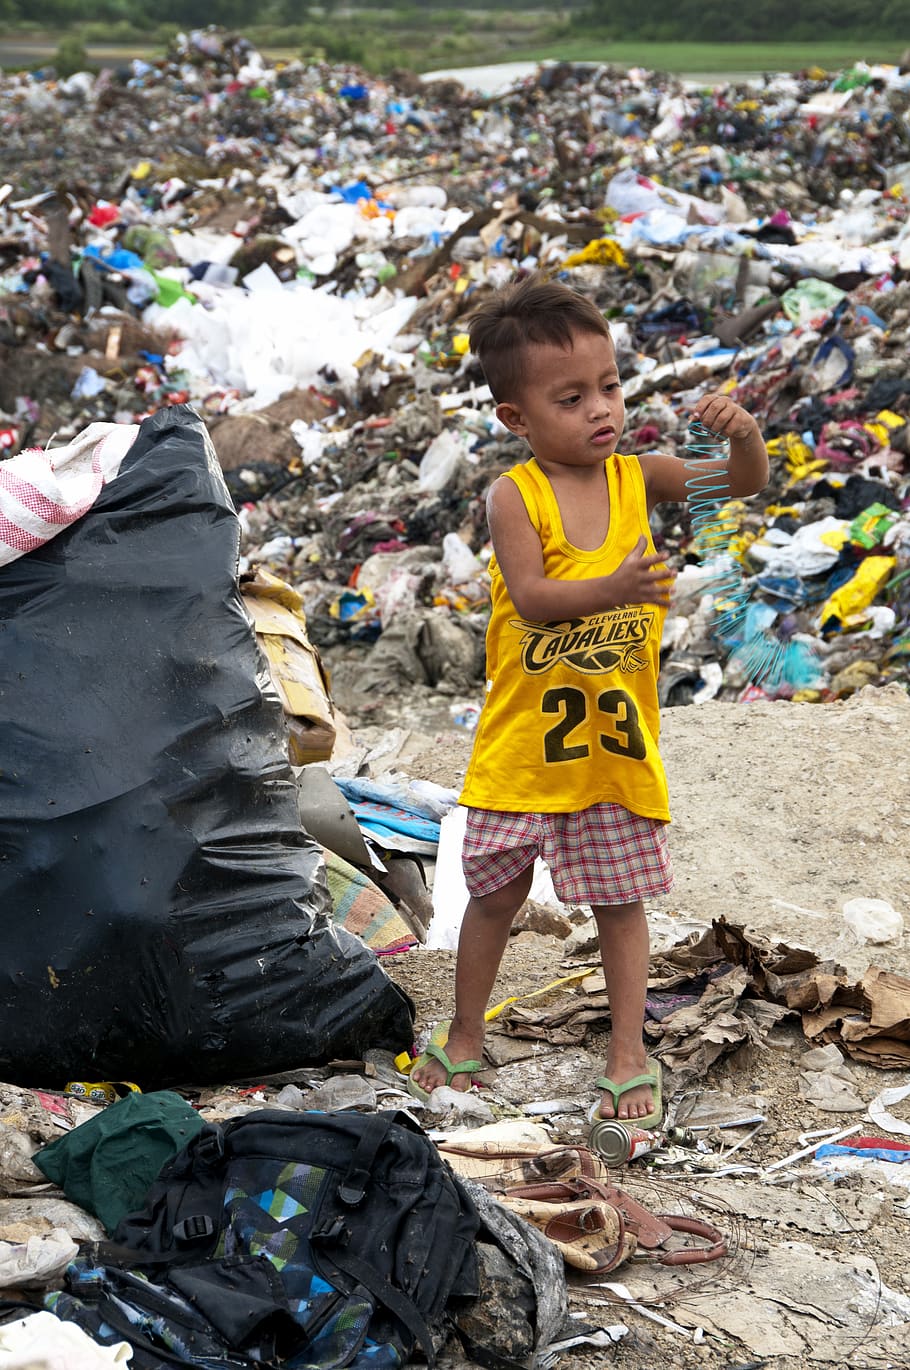 basura, plástico, filipinas, cebú, pobreza, niños, juegos, reciclaje, recolección de basura, desechos plásticos